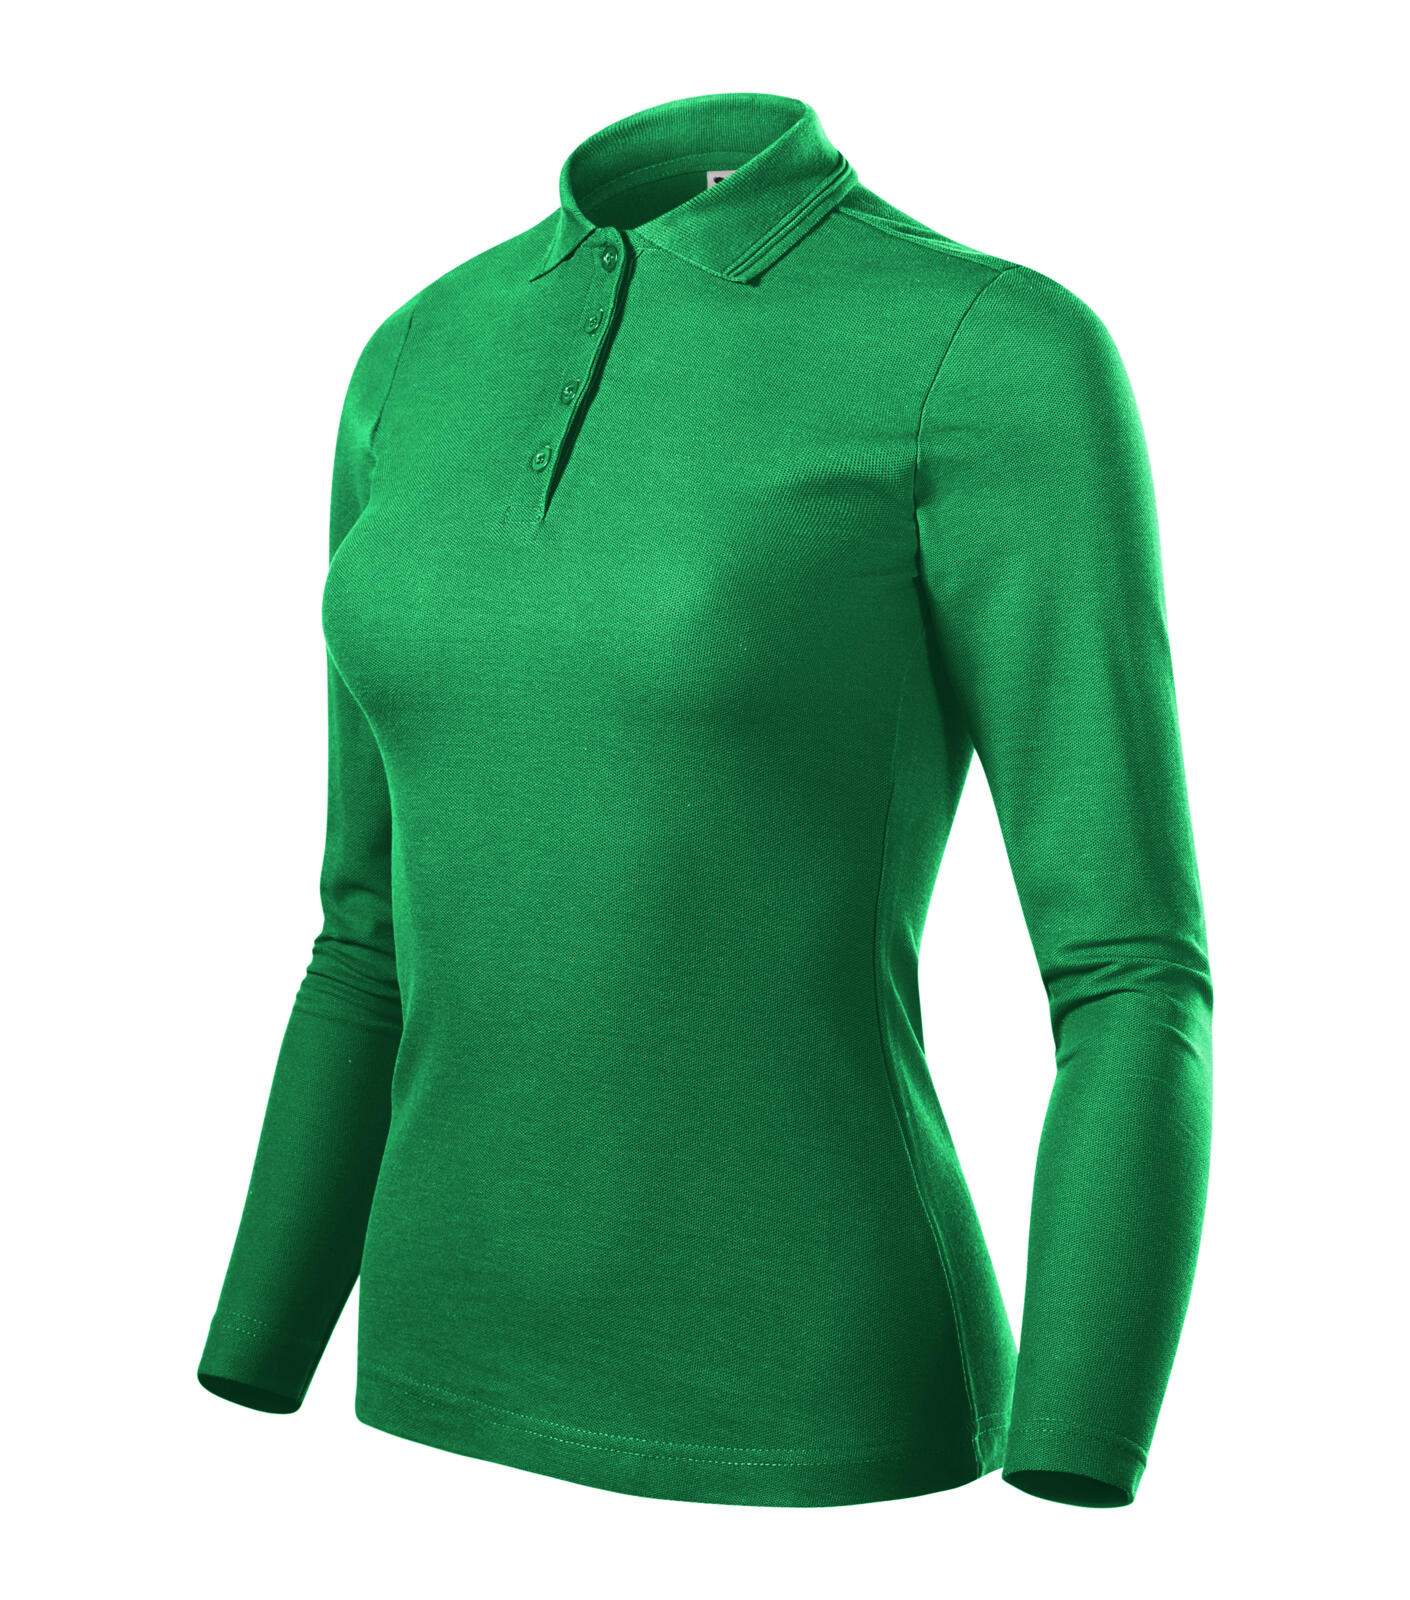 Pique Polo LS Polokošile dámská Barva: středně zelená, Velikost: L